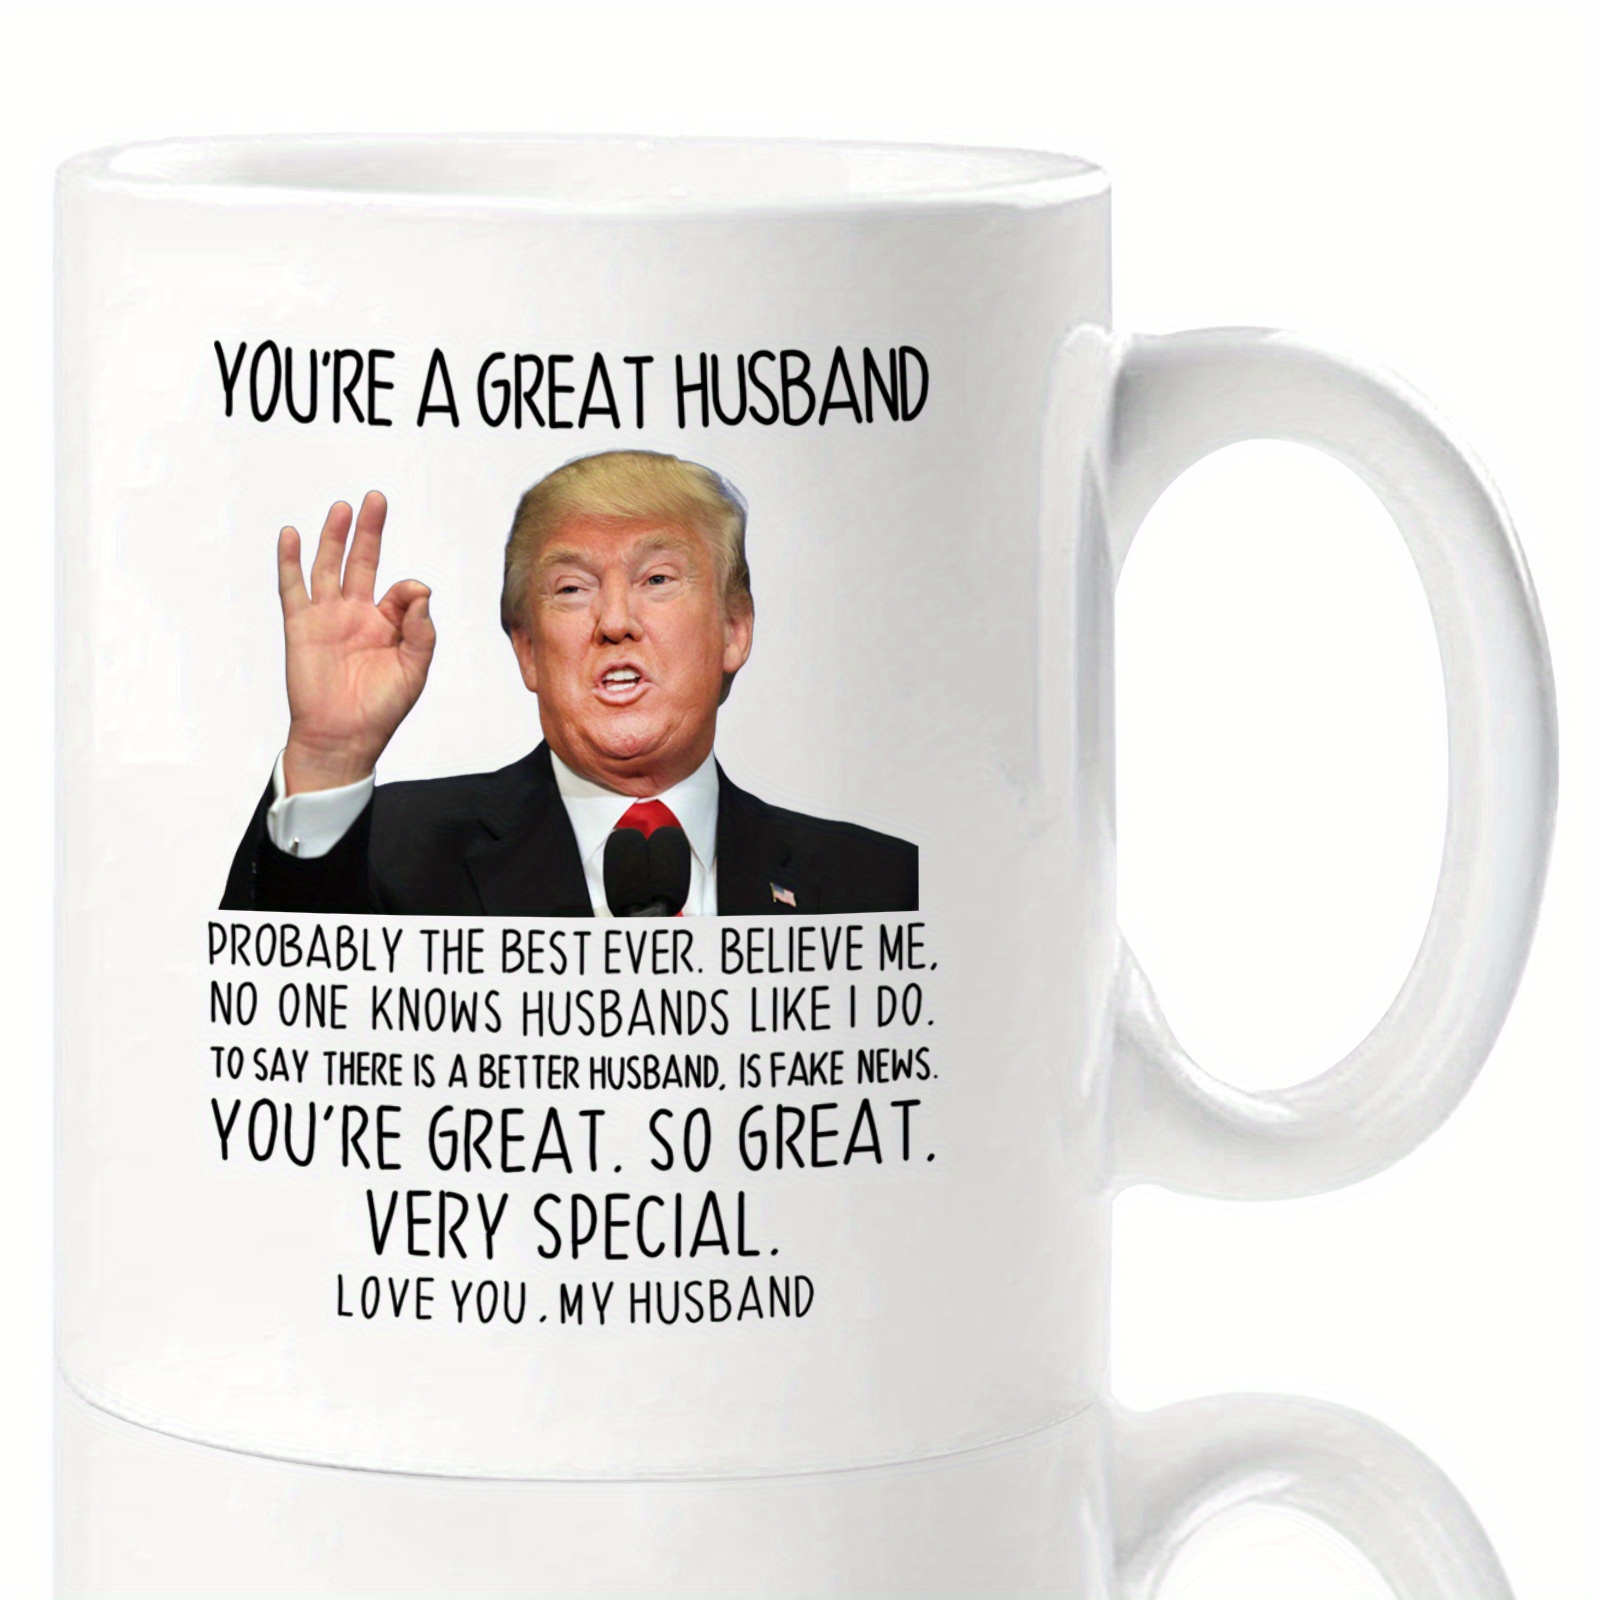 Trump Mug Pop Pop Gifts For Men Funny Pop Pop Gift For Him Gifts For New  Pop Pop New Pop Pop Gift Donald Trump Items, Novelty Coffee Mugs 11oz, 15oz  Mug 